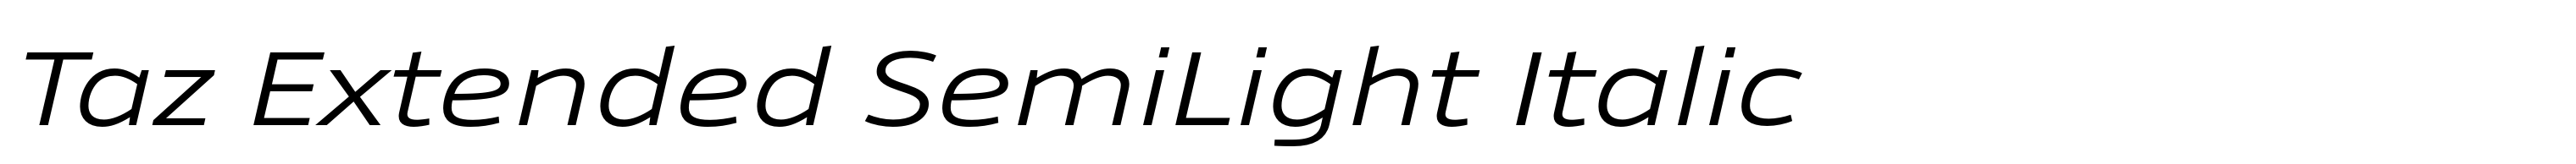 Taz Extended SemiLight Italic